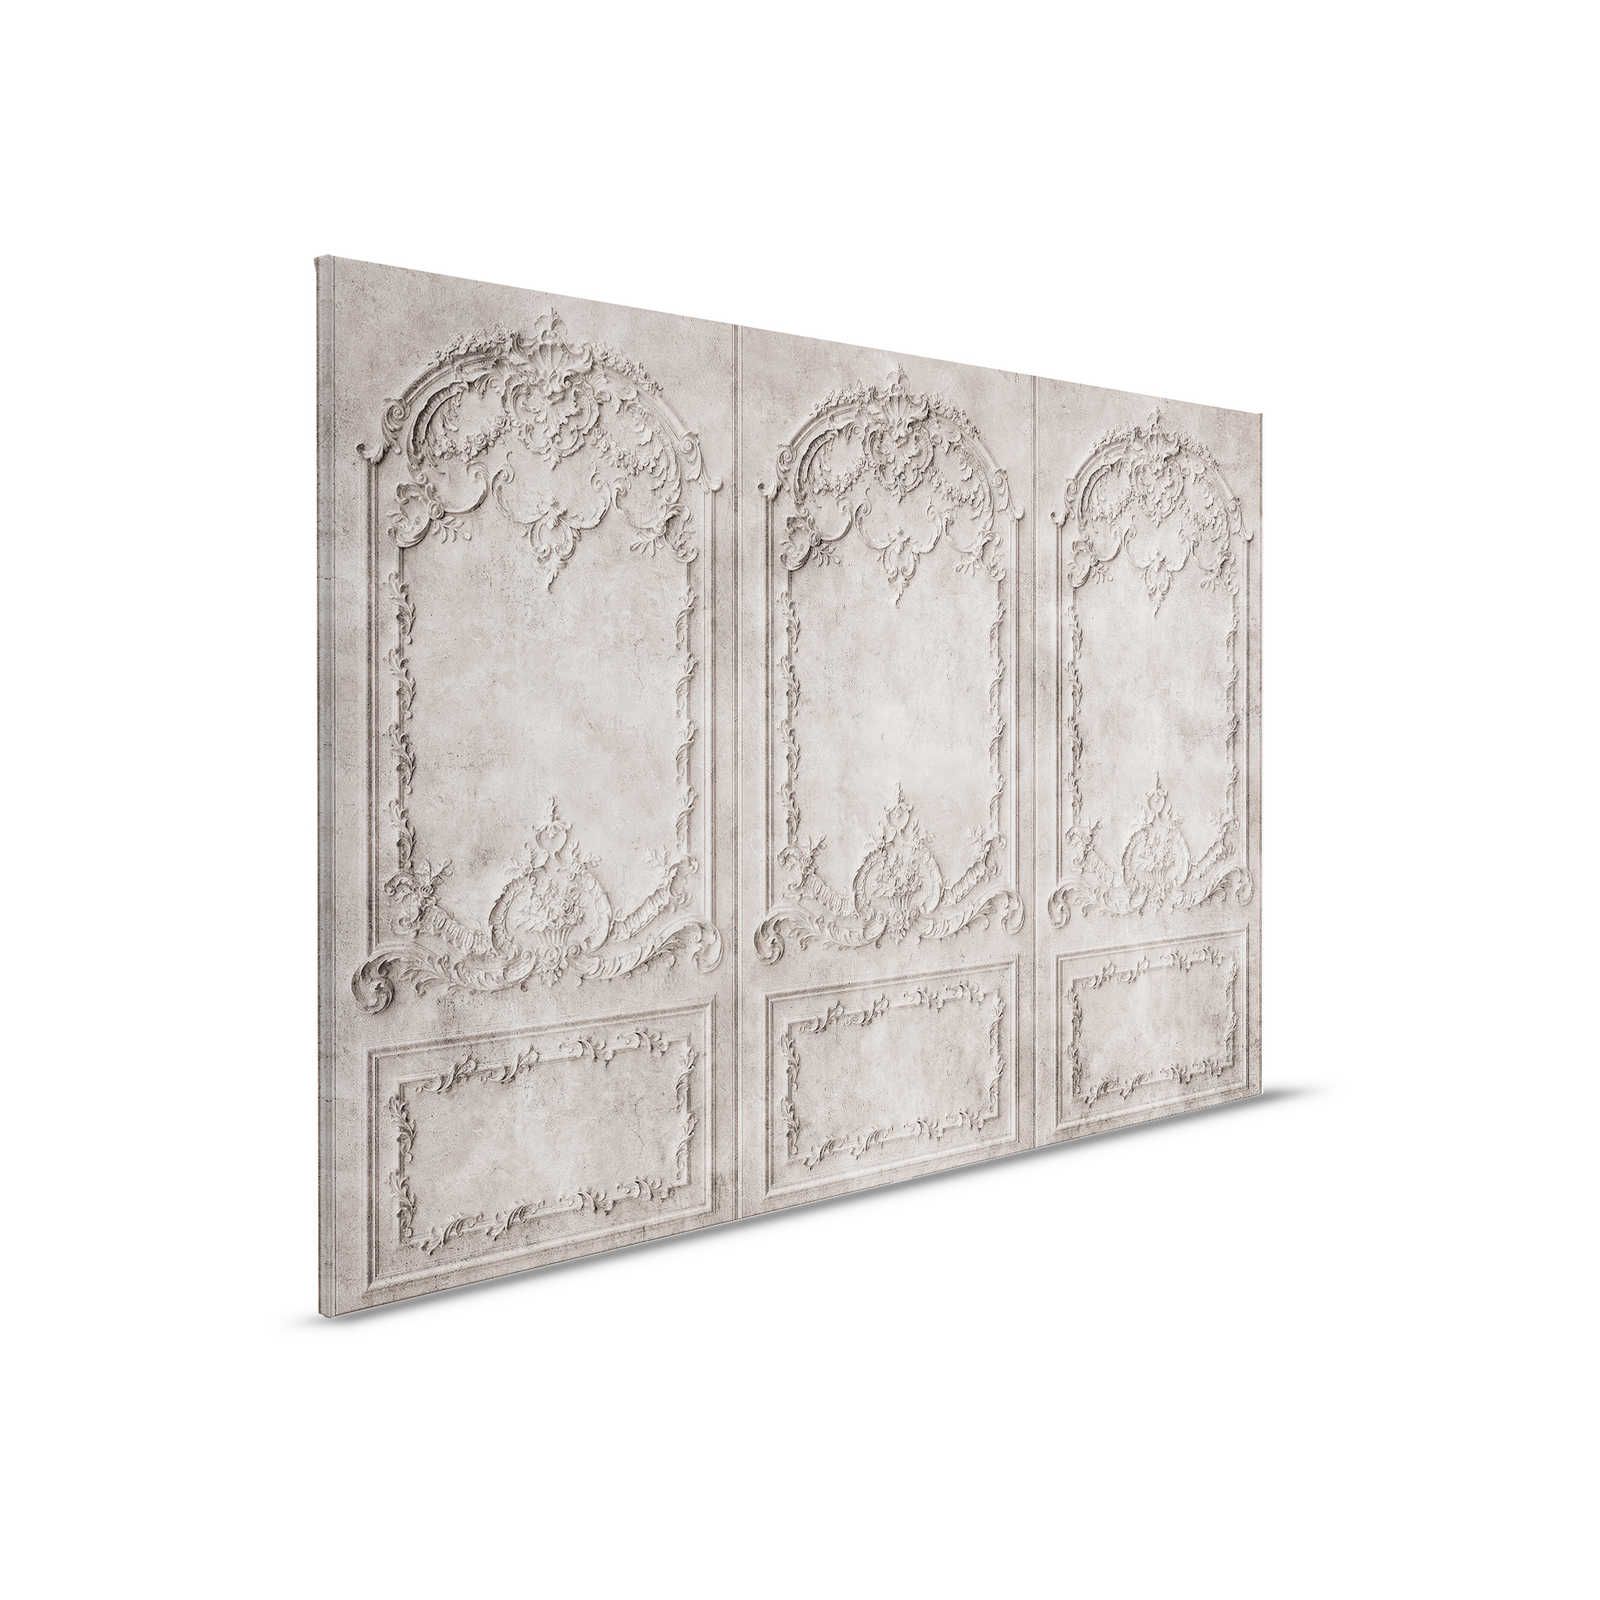 Versailles 1 - Quadro su tela in stile barocco grigio-marrone - 0,90 m x 0,60 m
